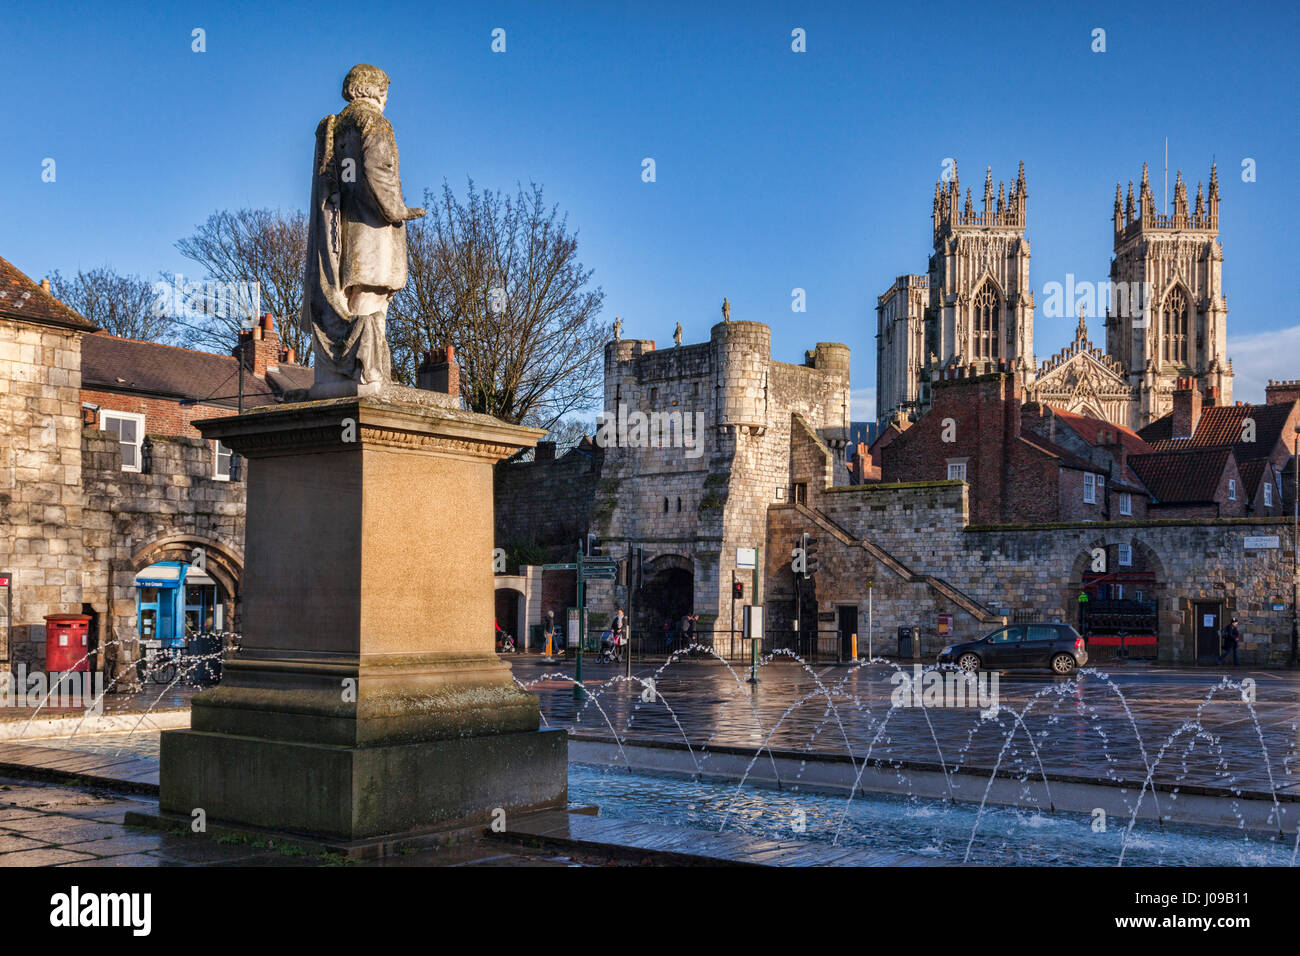 Eine feine Wintertag in der Stadt York, North Yorkshire, England, Großbritannien und die 1911-Statue von William Etty blickt auf Monkgate und York Minster. Stockfoto